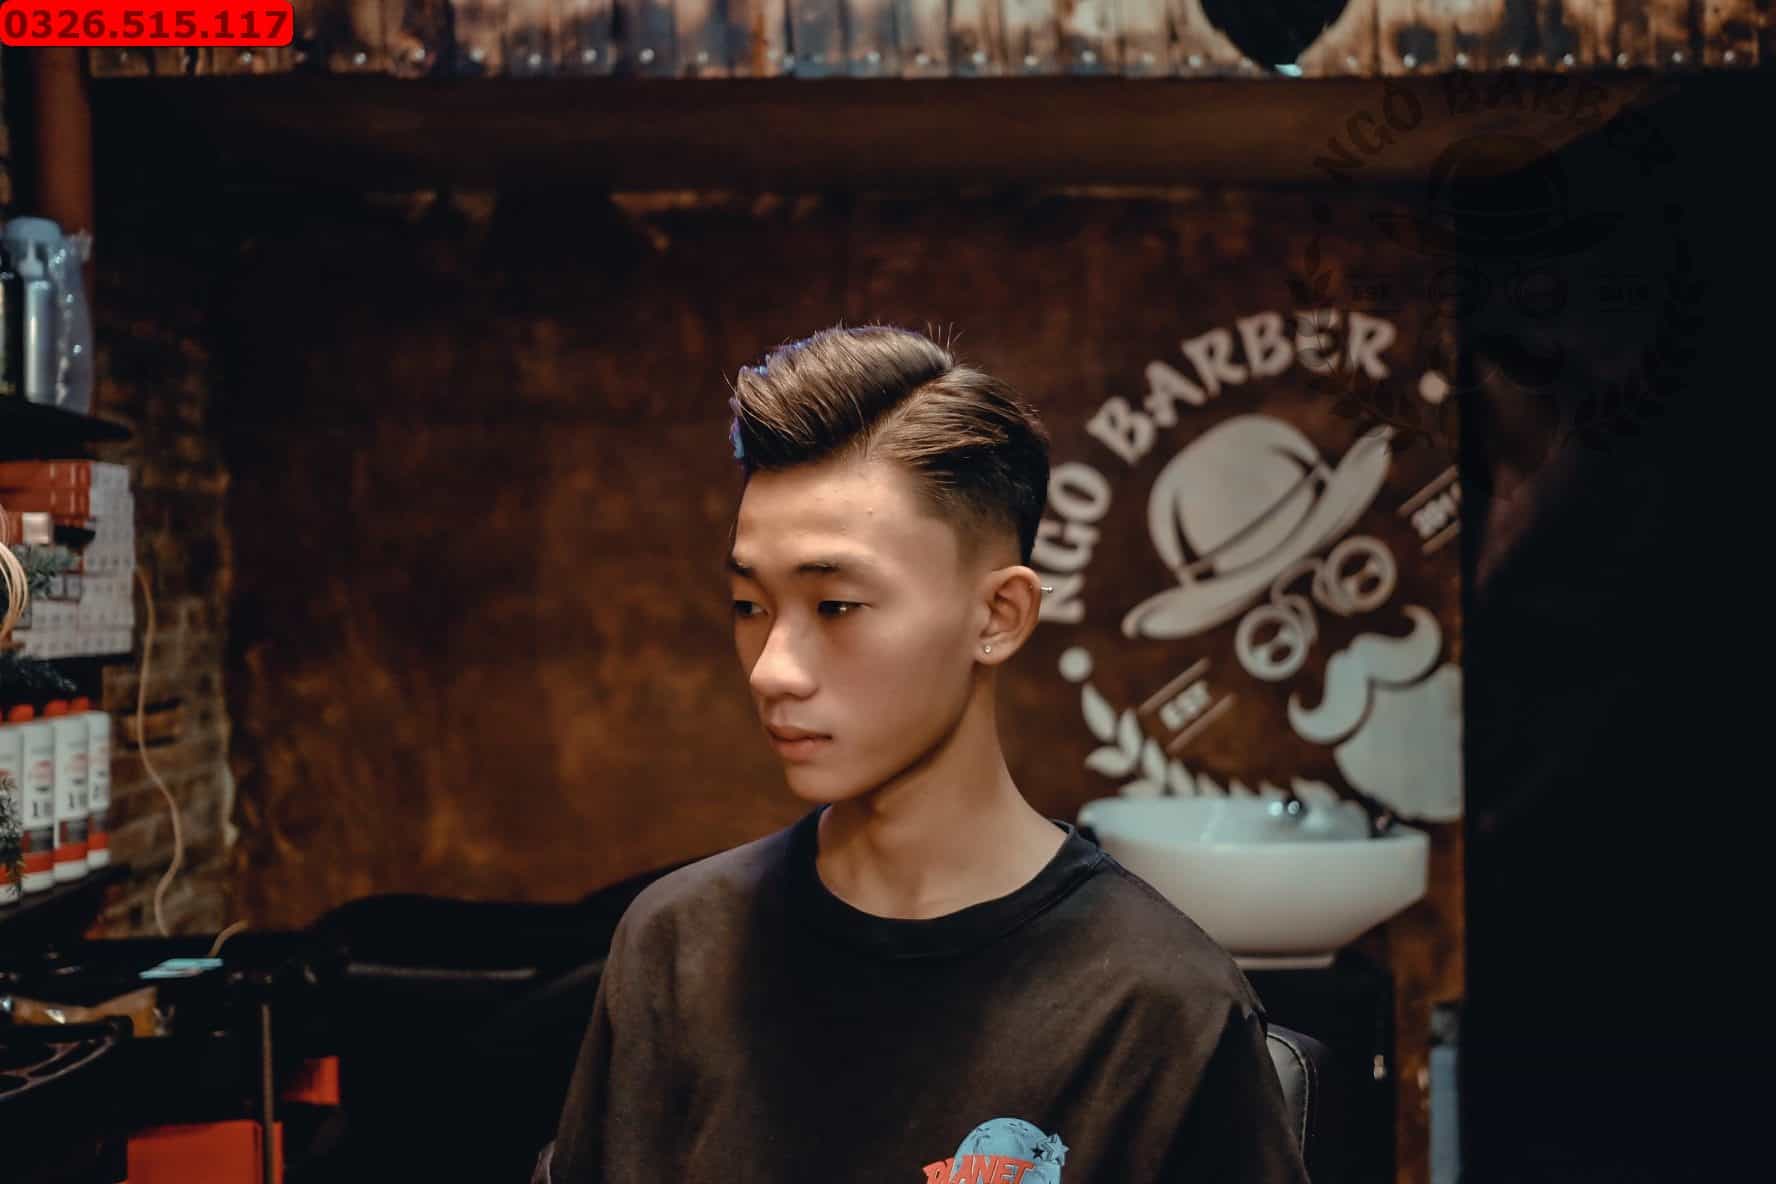 Muốn tìm kiểu tóc đậm chất Sài Gòn? Đến ngay cửa tiệm cắt tóc nam ở Sài Gòn để trải nghiệm dịch vụ cắt tóc chất lượng tốt nhất trong thành phố. Với các dịch vụ cắt tóc năng động và chuyên nghiệp, chắc chắn bạn sẽ cảm thấy thỏa mãn. Hãy xem hình ảnh để hiểu rõ hơn về dịch vụ cắt tóc này.